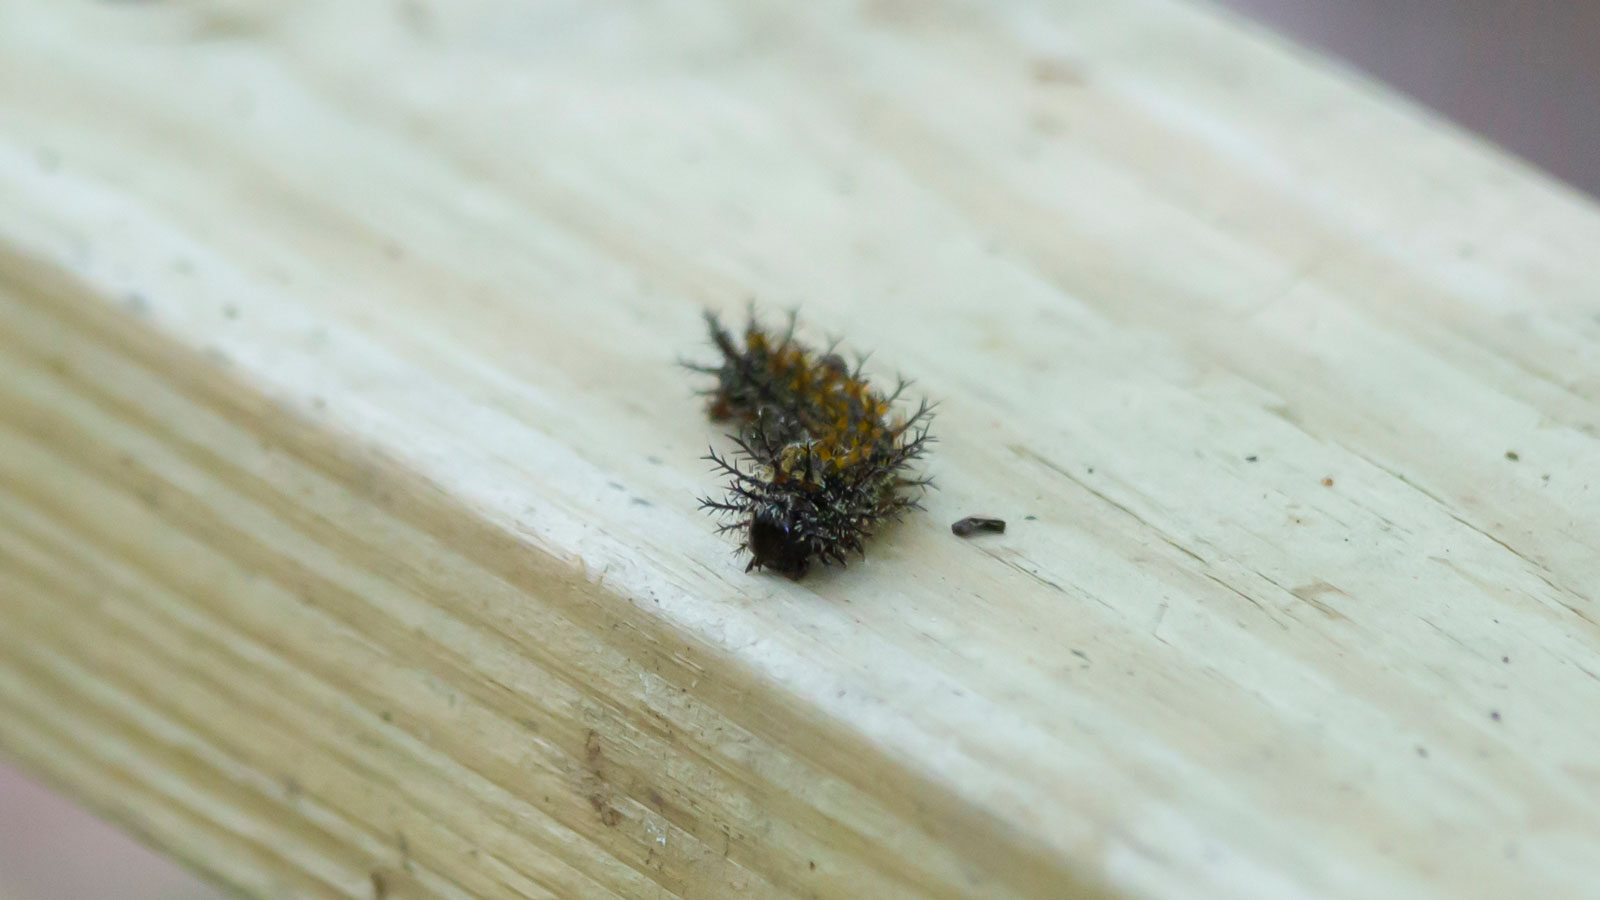 Buck moth caterpillar on a wooden board